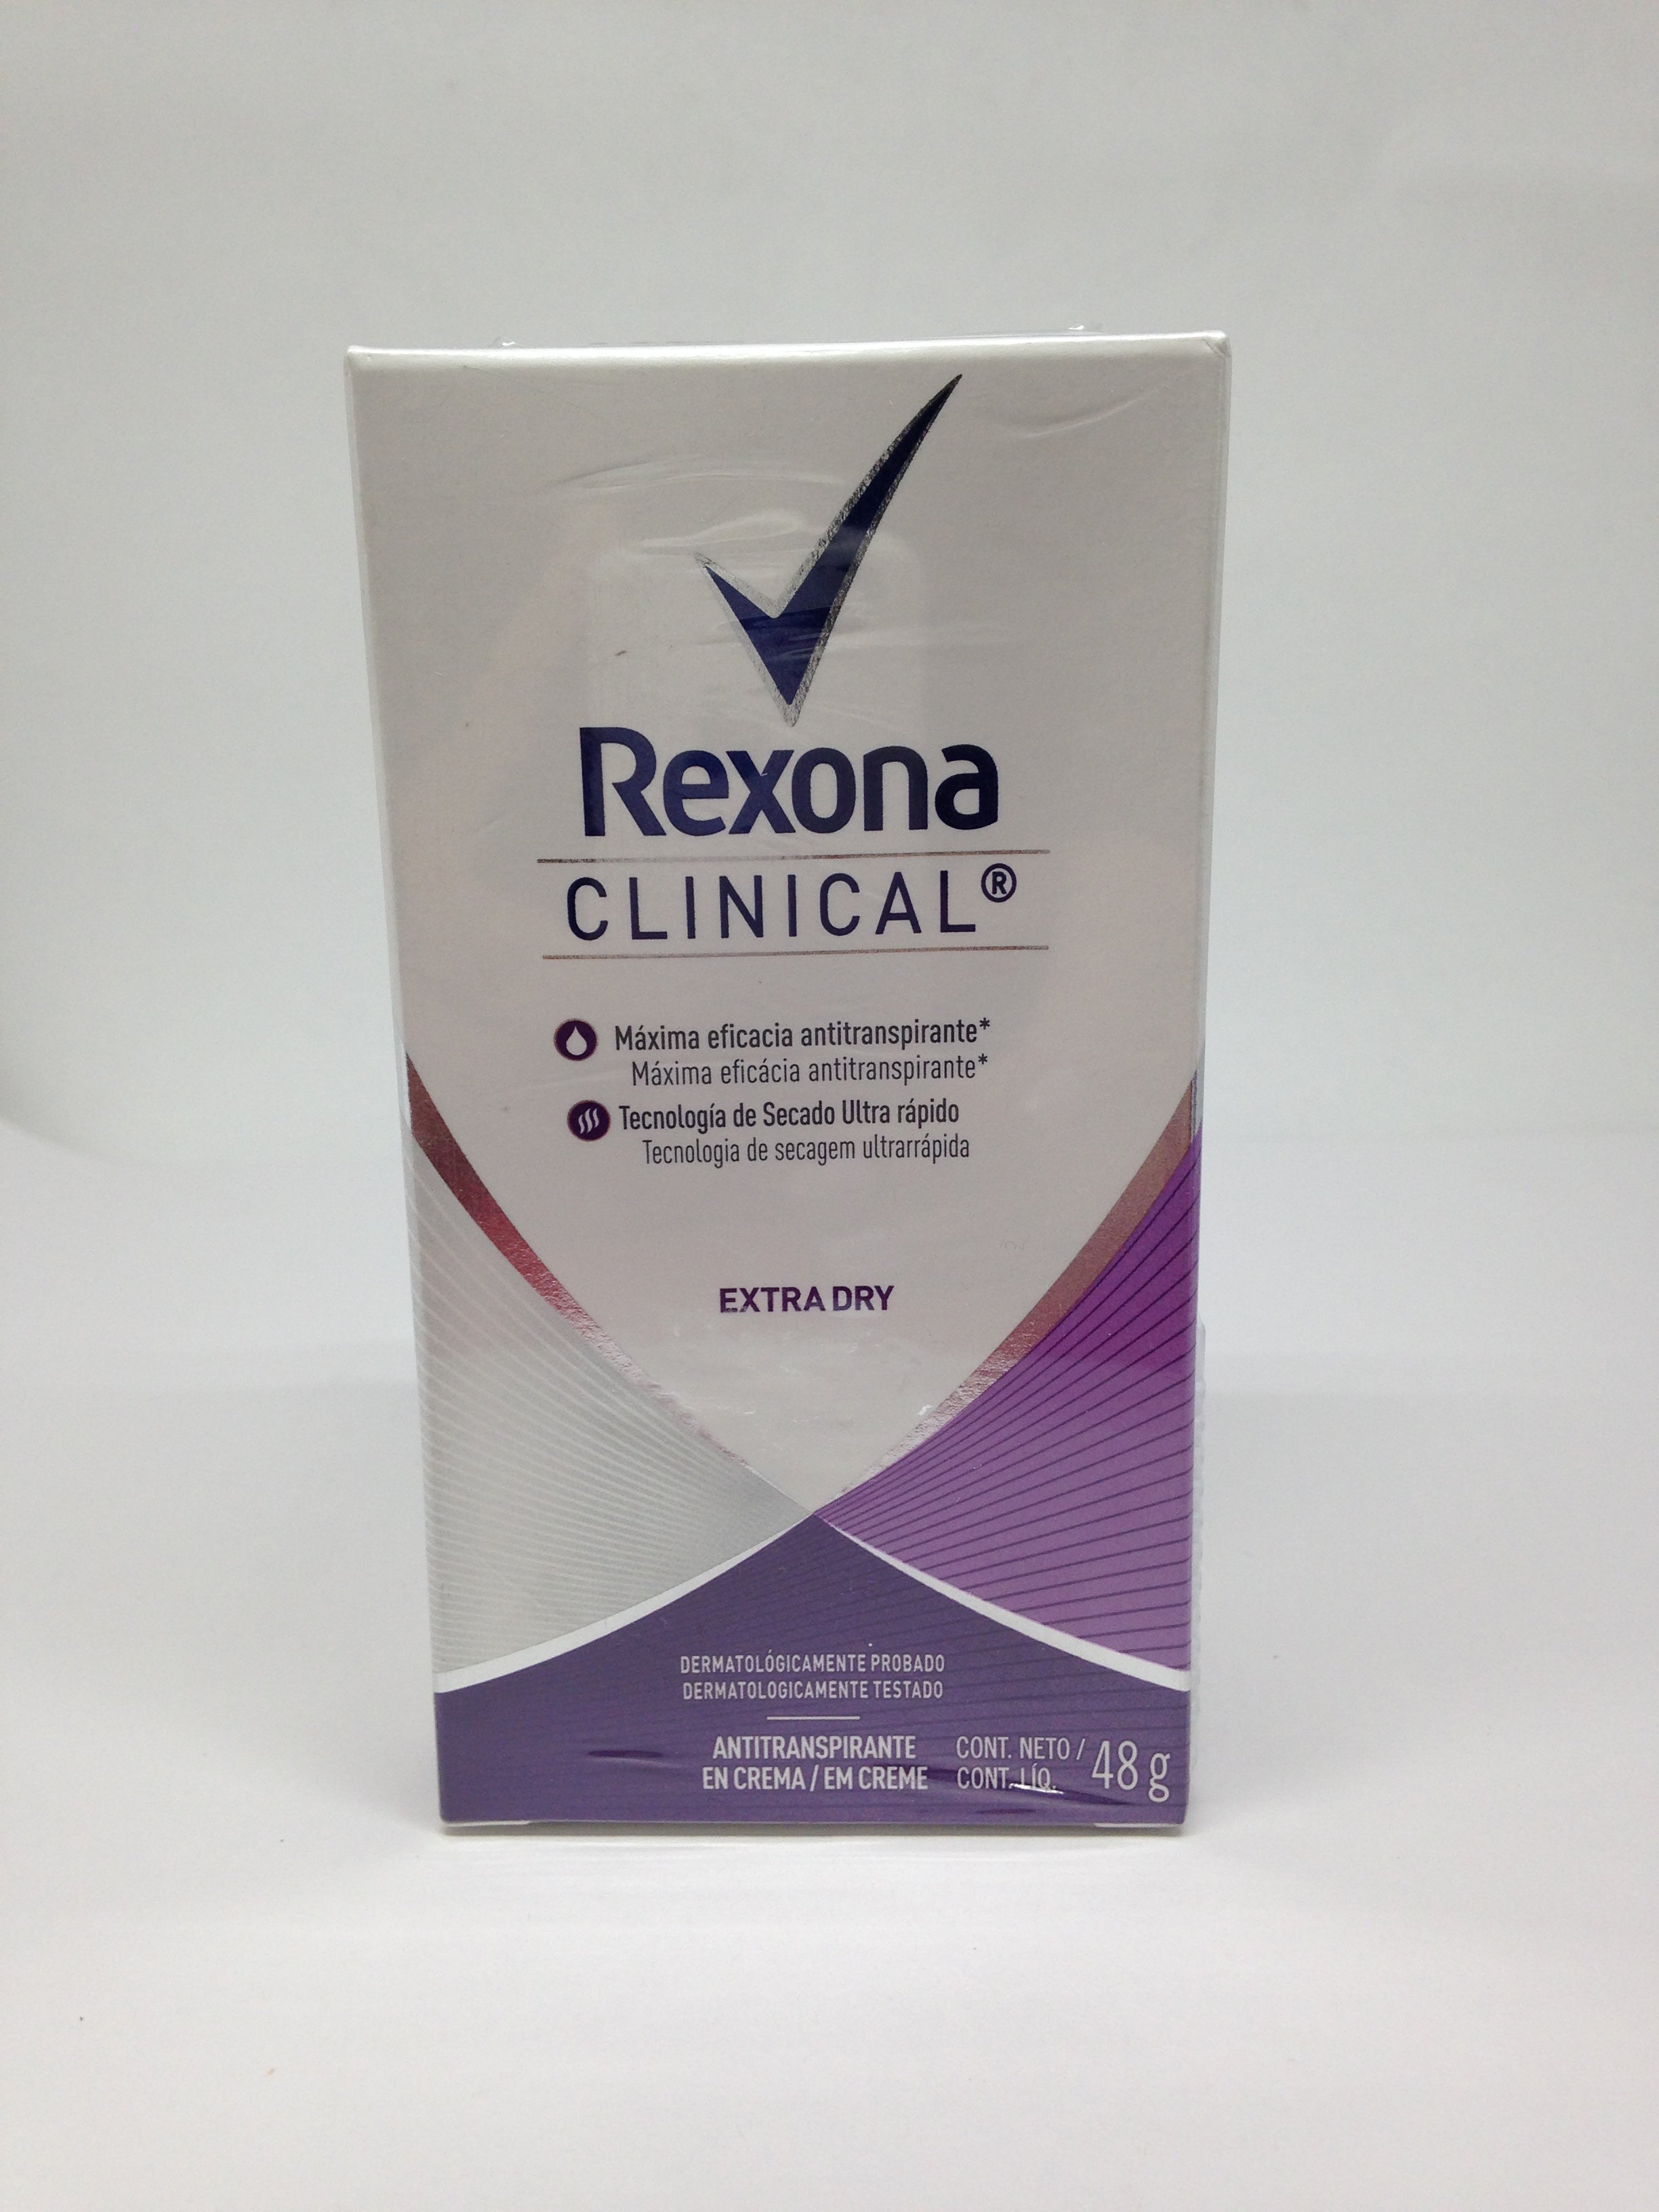 Rexona Clinical Crema 48 Gr. – Brasil Eu Quero!